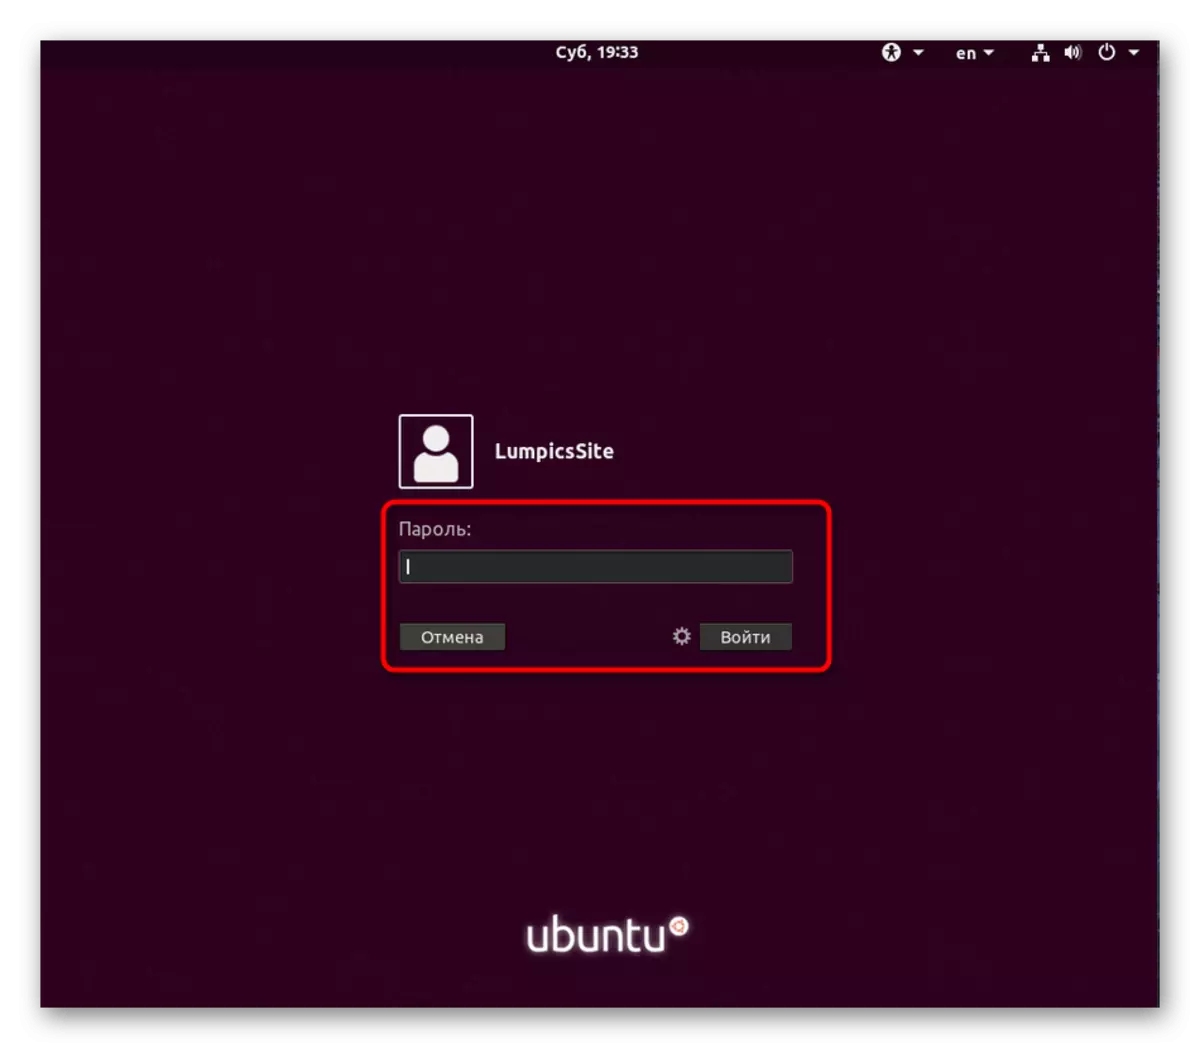 Introduïu la contrasenya per autoritzar l'usuari a Ubuntu